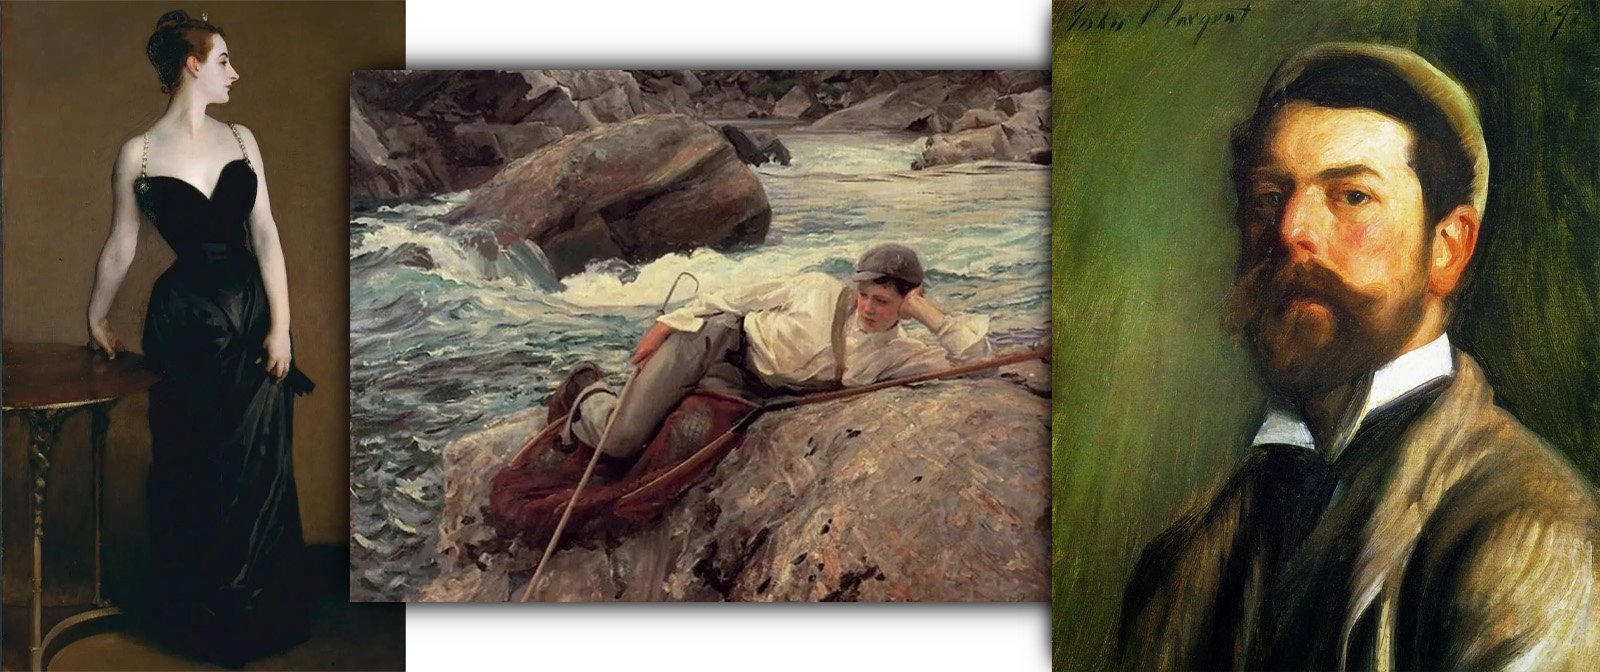 ​Почему лучшая картина Джона Сингера Сарджента напрочь испортила ему репутацию и вызвала немалый скандал? Необычная судьба художника.